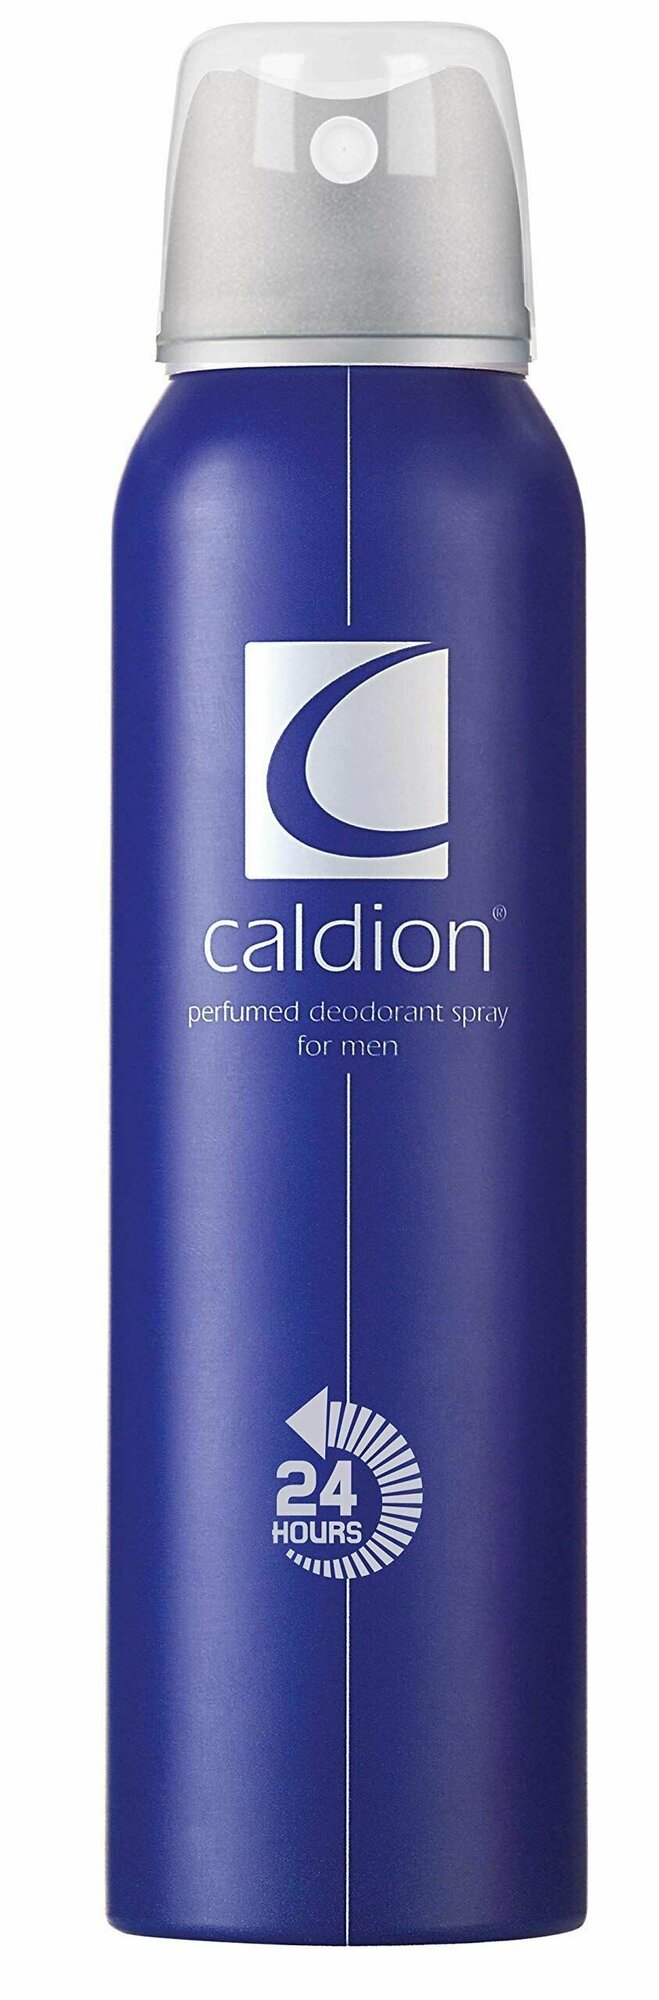 Парфюмированный спрей-дезодорант Caldion men deo мужской, спрей, 150 мл.